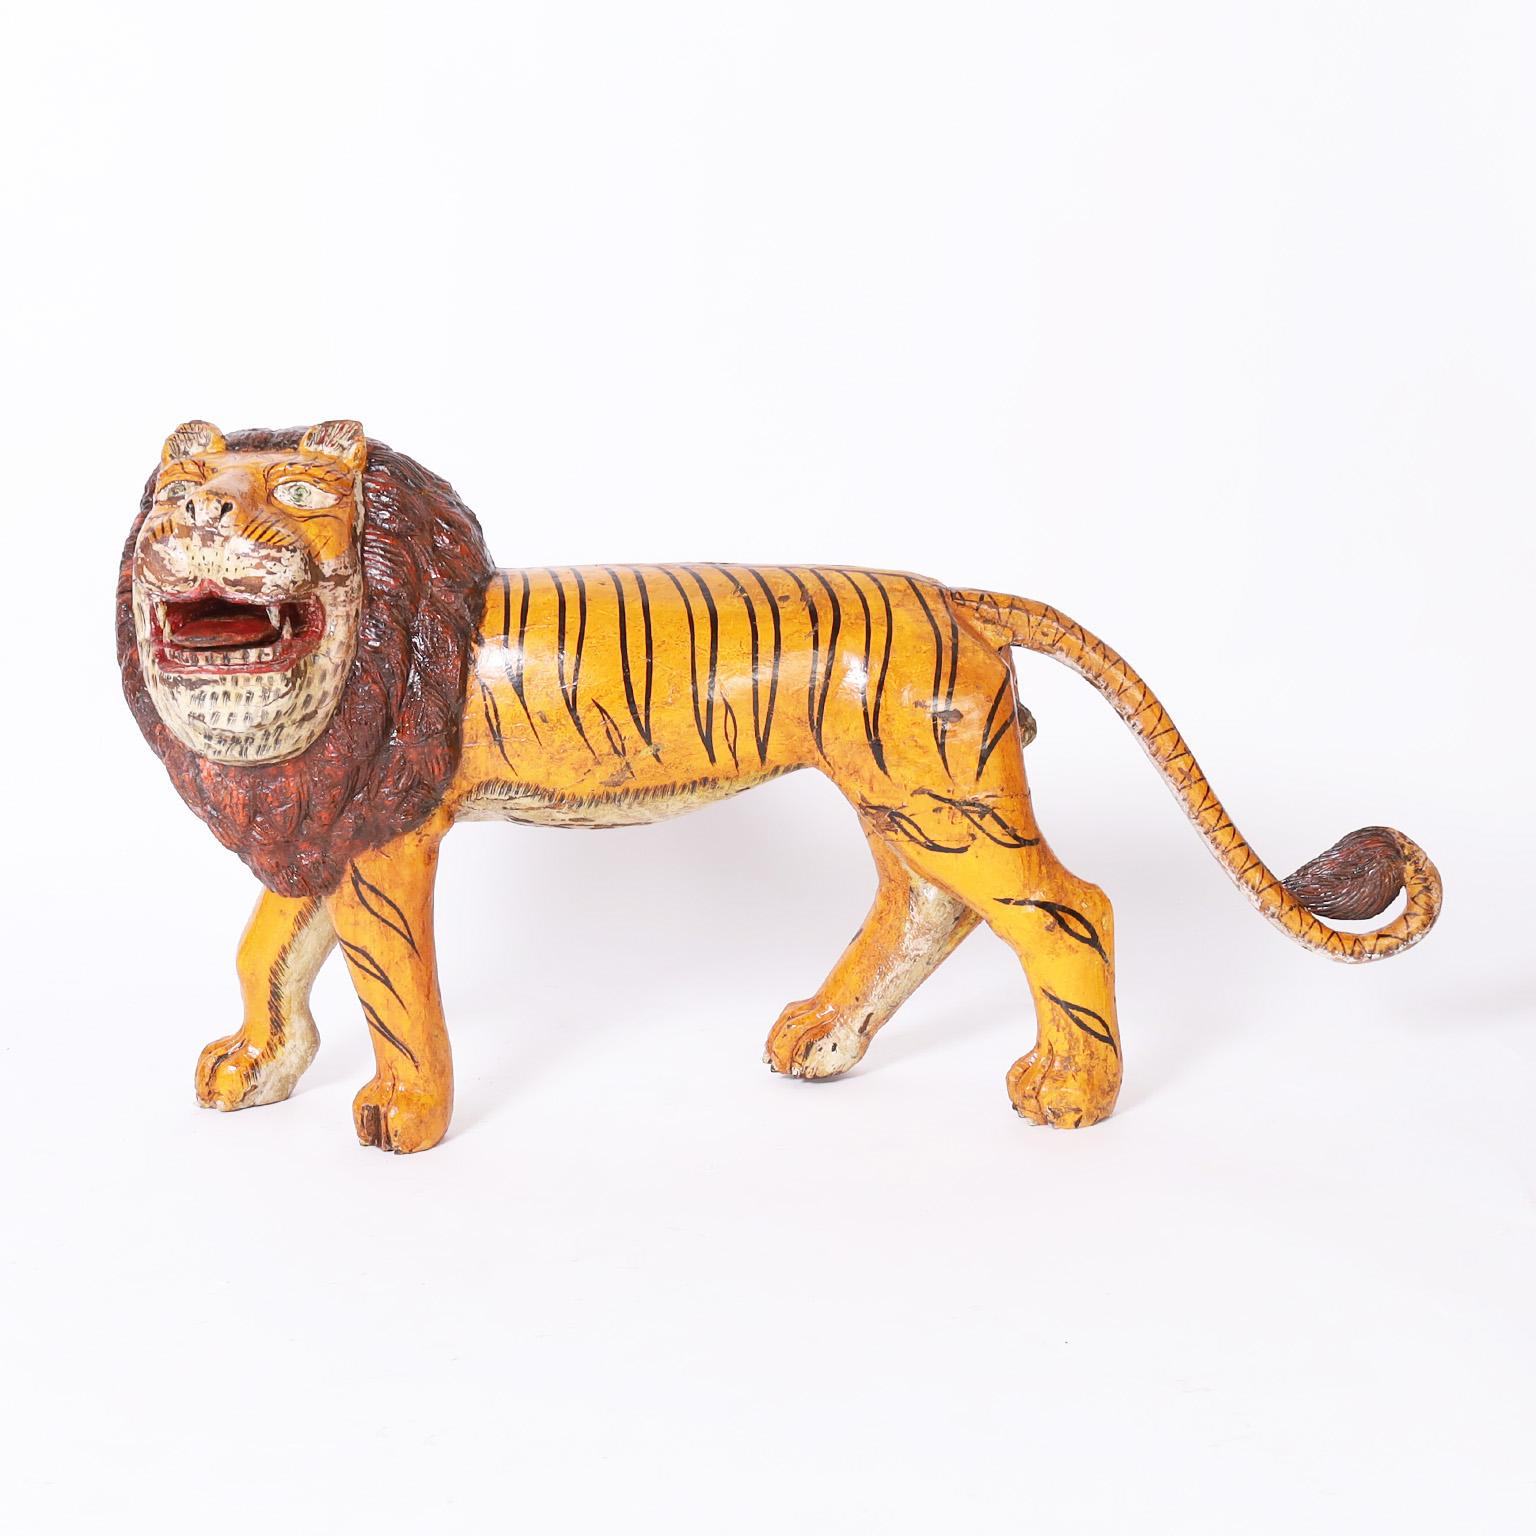 Rustikale Skulptur einer Großkatze aus geschnitztem Mahagoni mit einer überraschenden, aber charmanten Kombination aus der Form eines Löwen und den Streifen eines Tigers. Die ursprüngliche Farbe ist bis zur Perfektion abgenutzt.